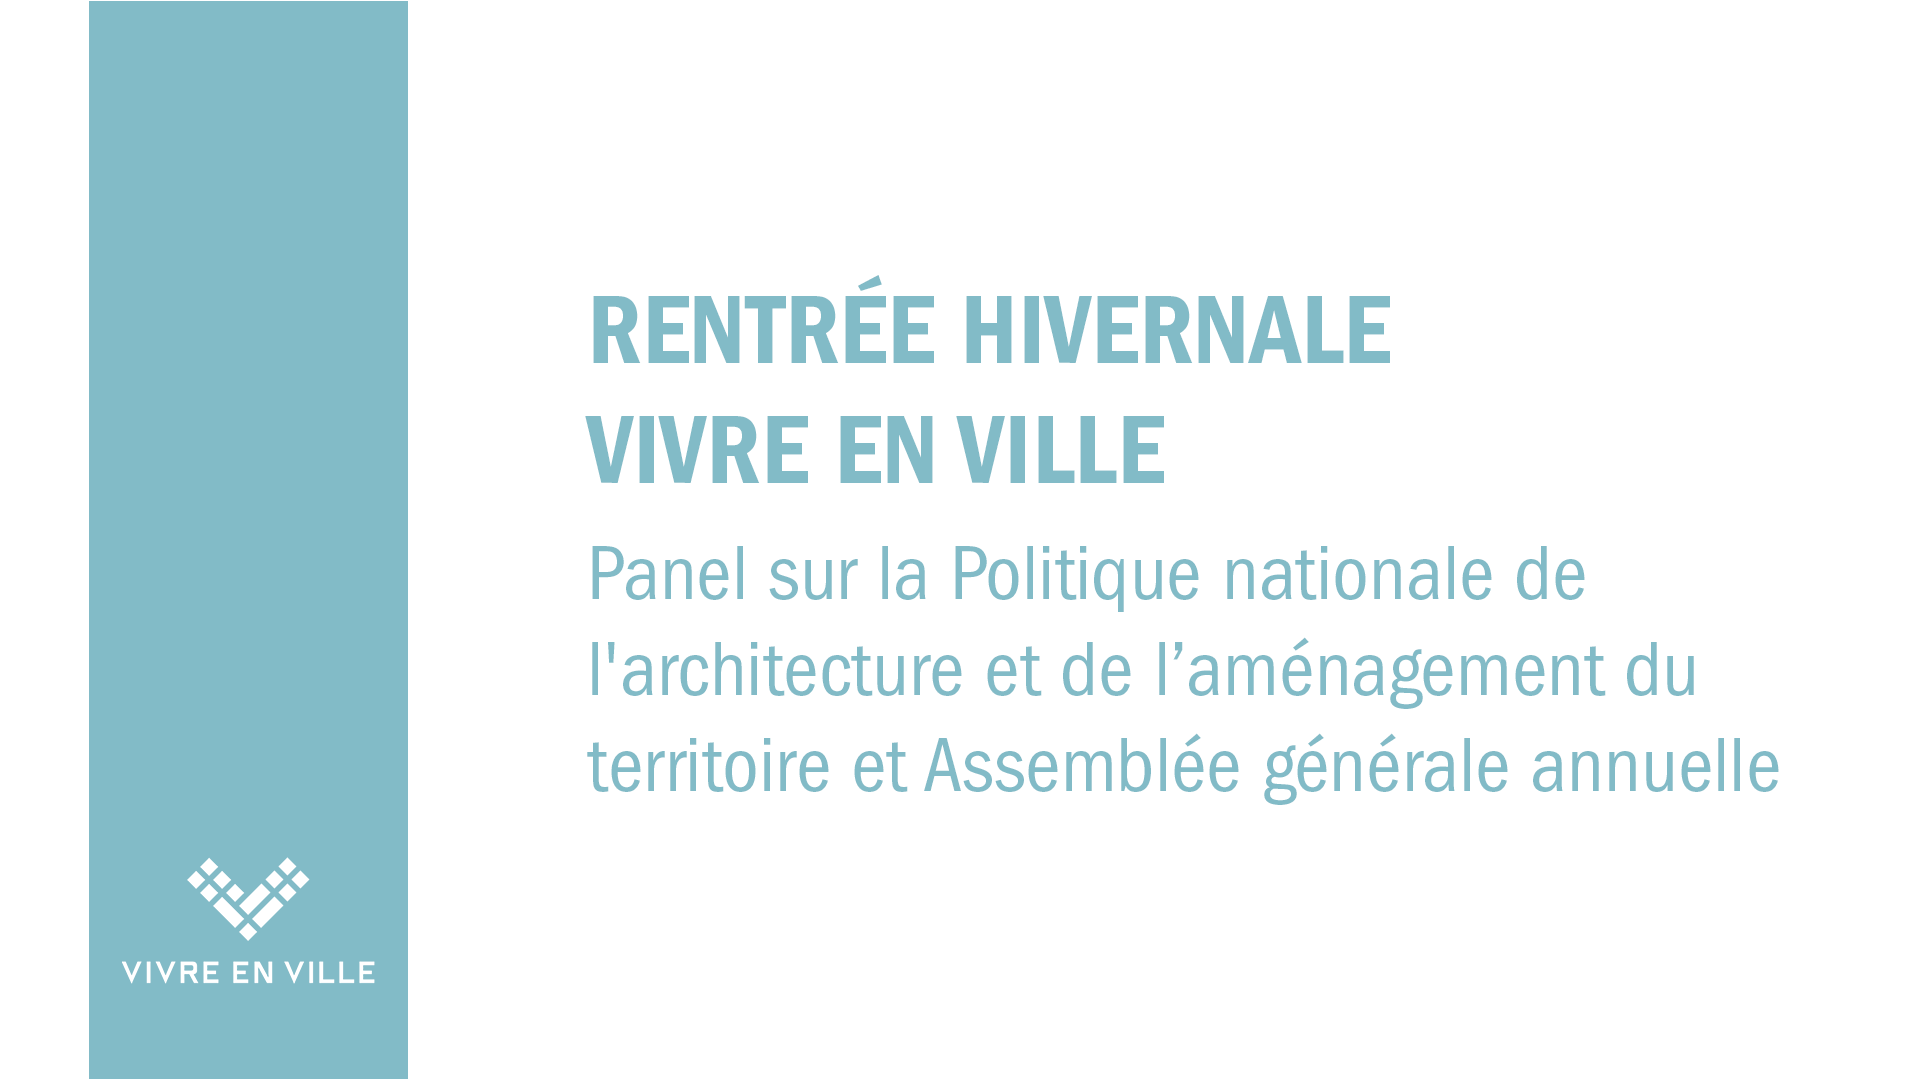 Rentrée hivernale de Vivre en Ville : Panel sur la politique nationale de l'architecture et de l'aménagement du territoire, cocktail réseautage et AGA